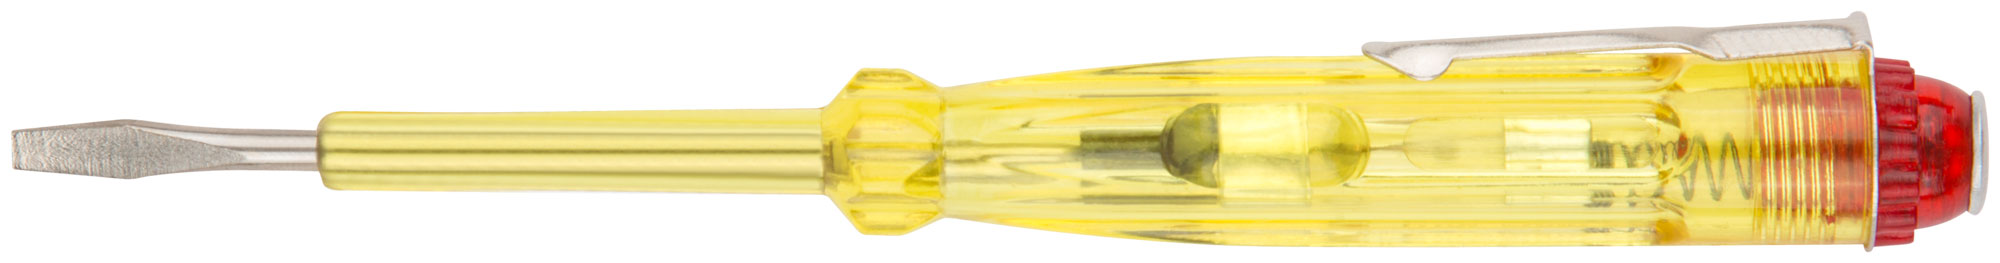 Отвертка индикаторная, желтая ручка 100 - 500 В, 140 мм КУРС 56501 отвертка индикаторная курс 56503